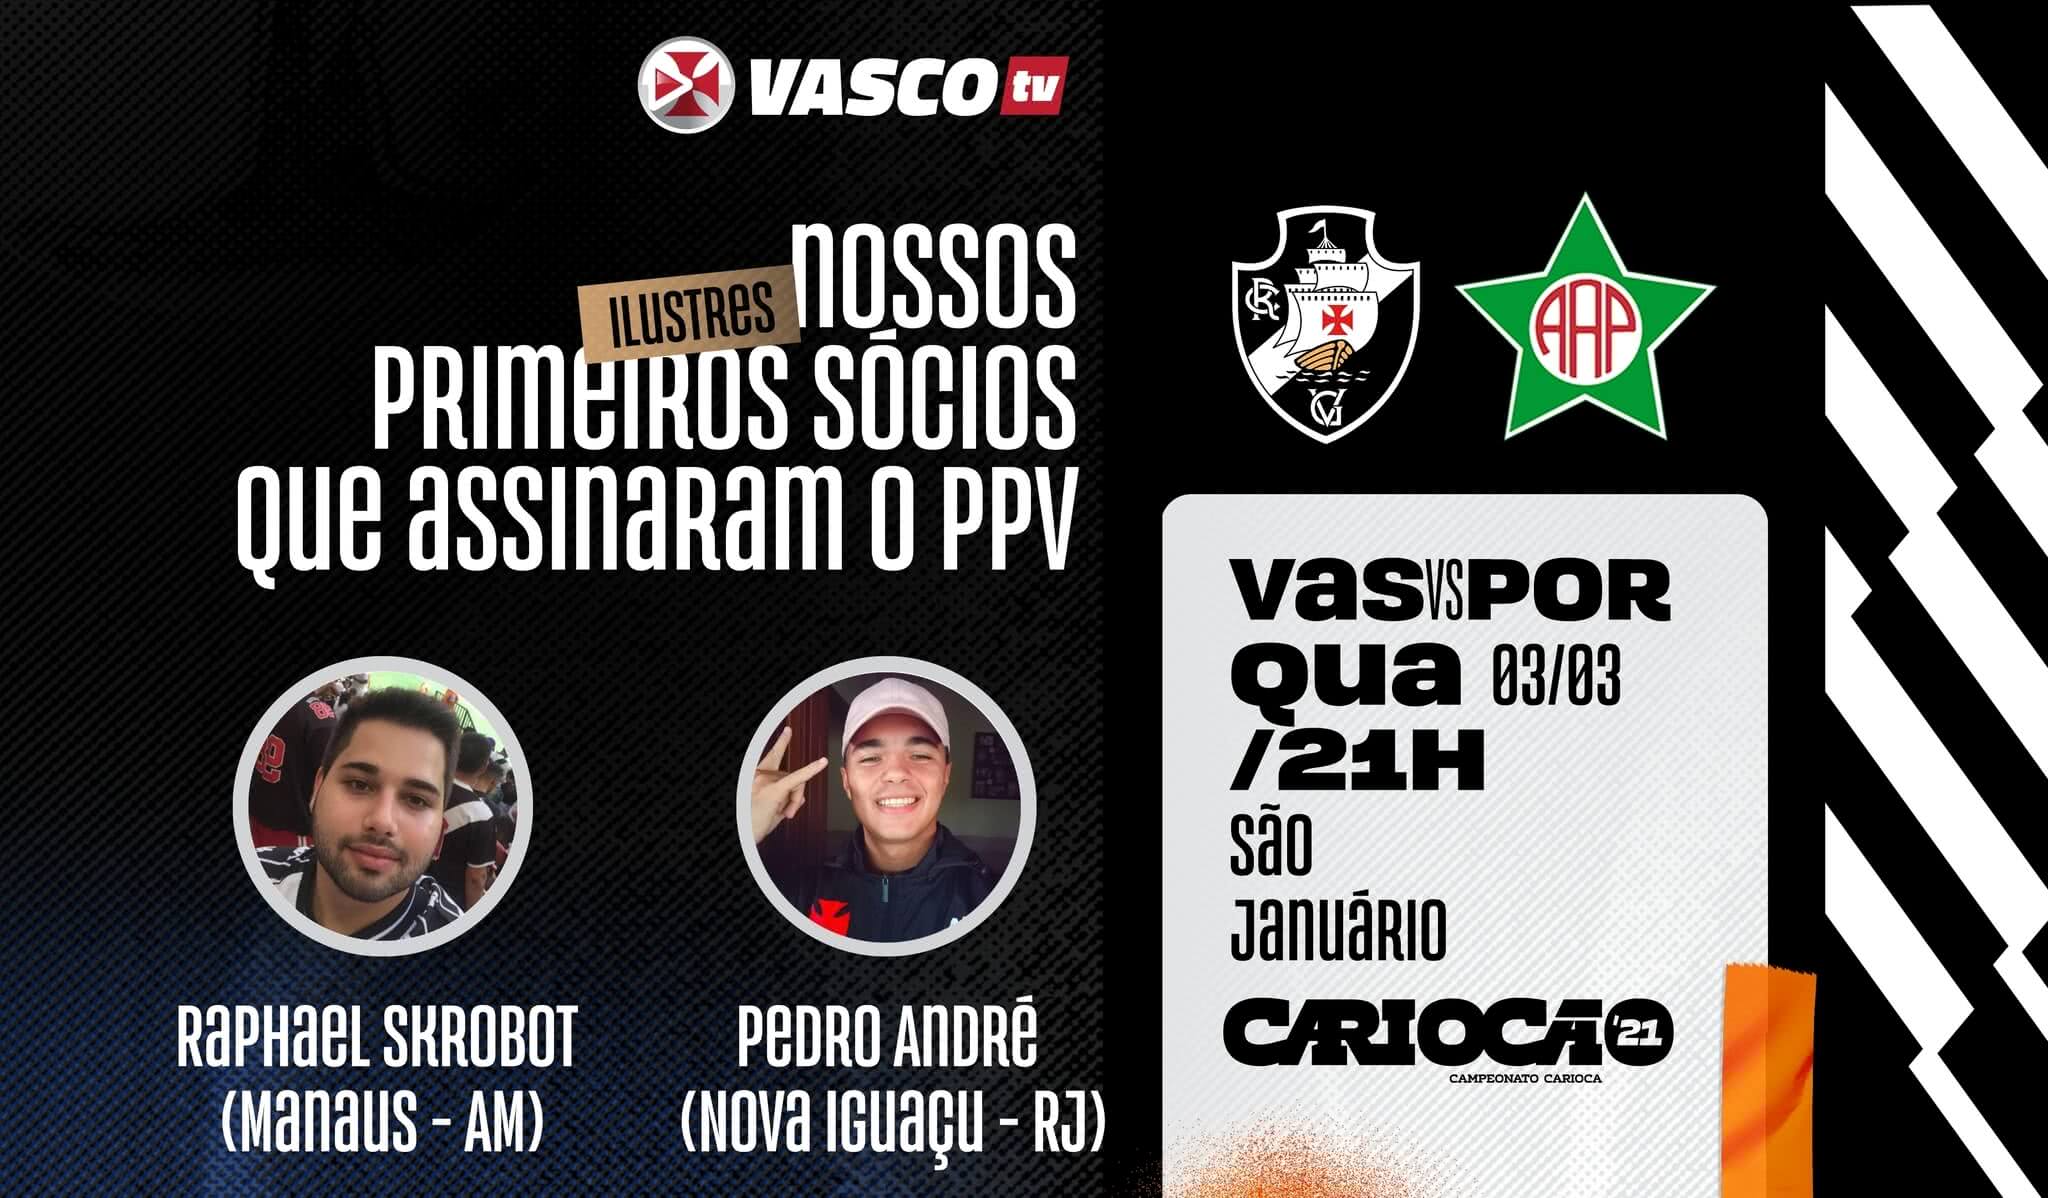 Dois sócios participarão da transmissão de Vasco x Portuguesa